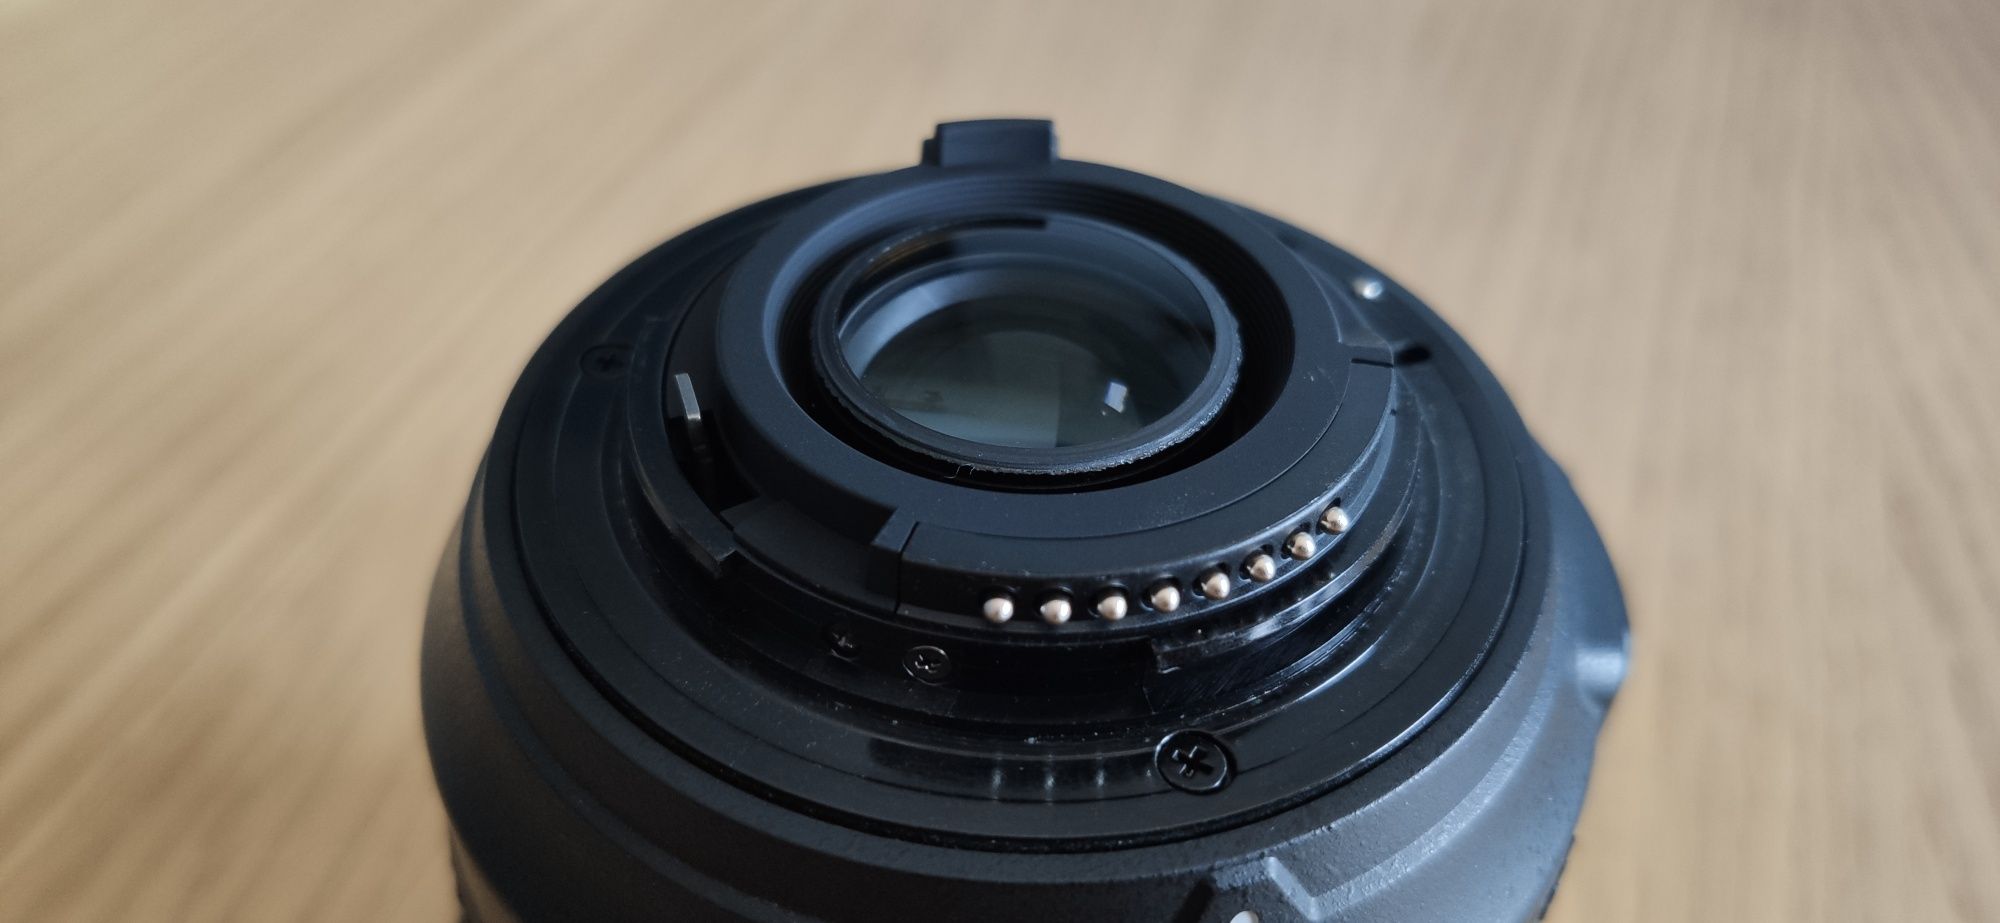 Aparat Nikon D90 Grip + obiektyw 18-105mm przebieg 18654 super stan